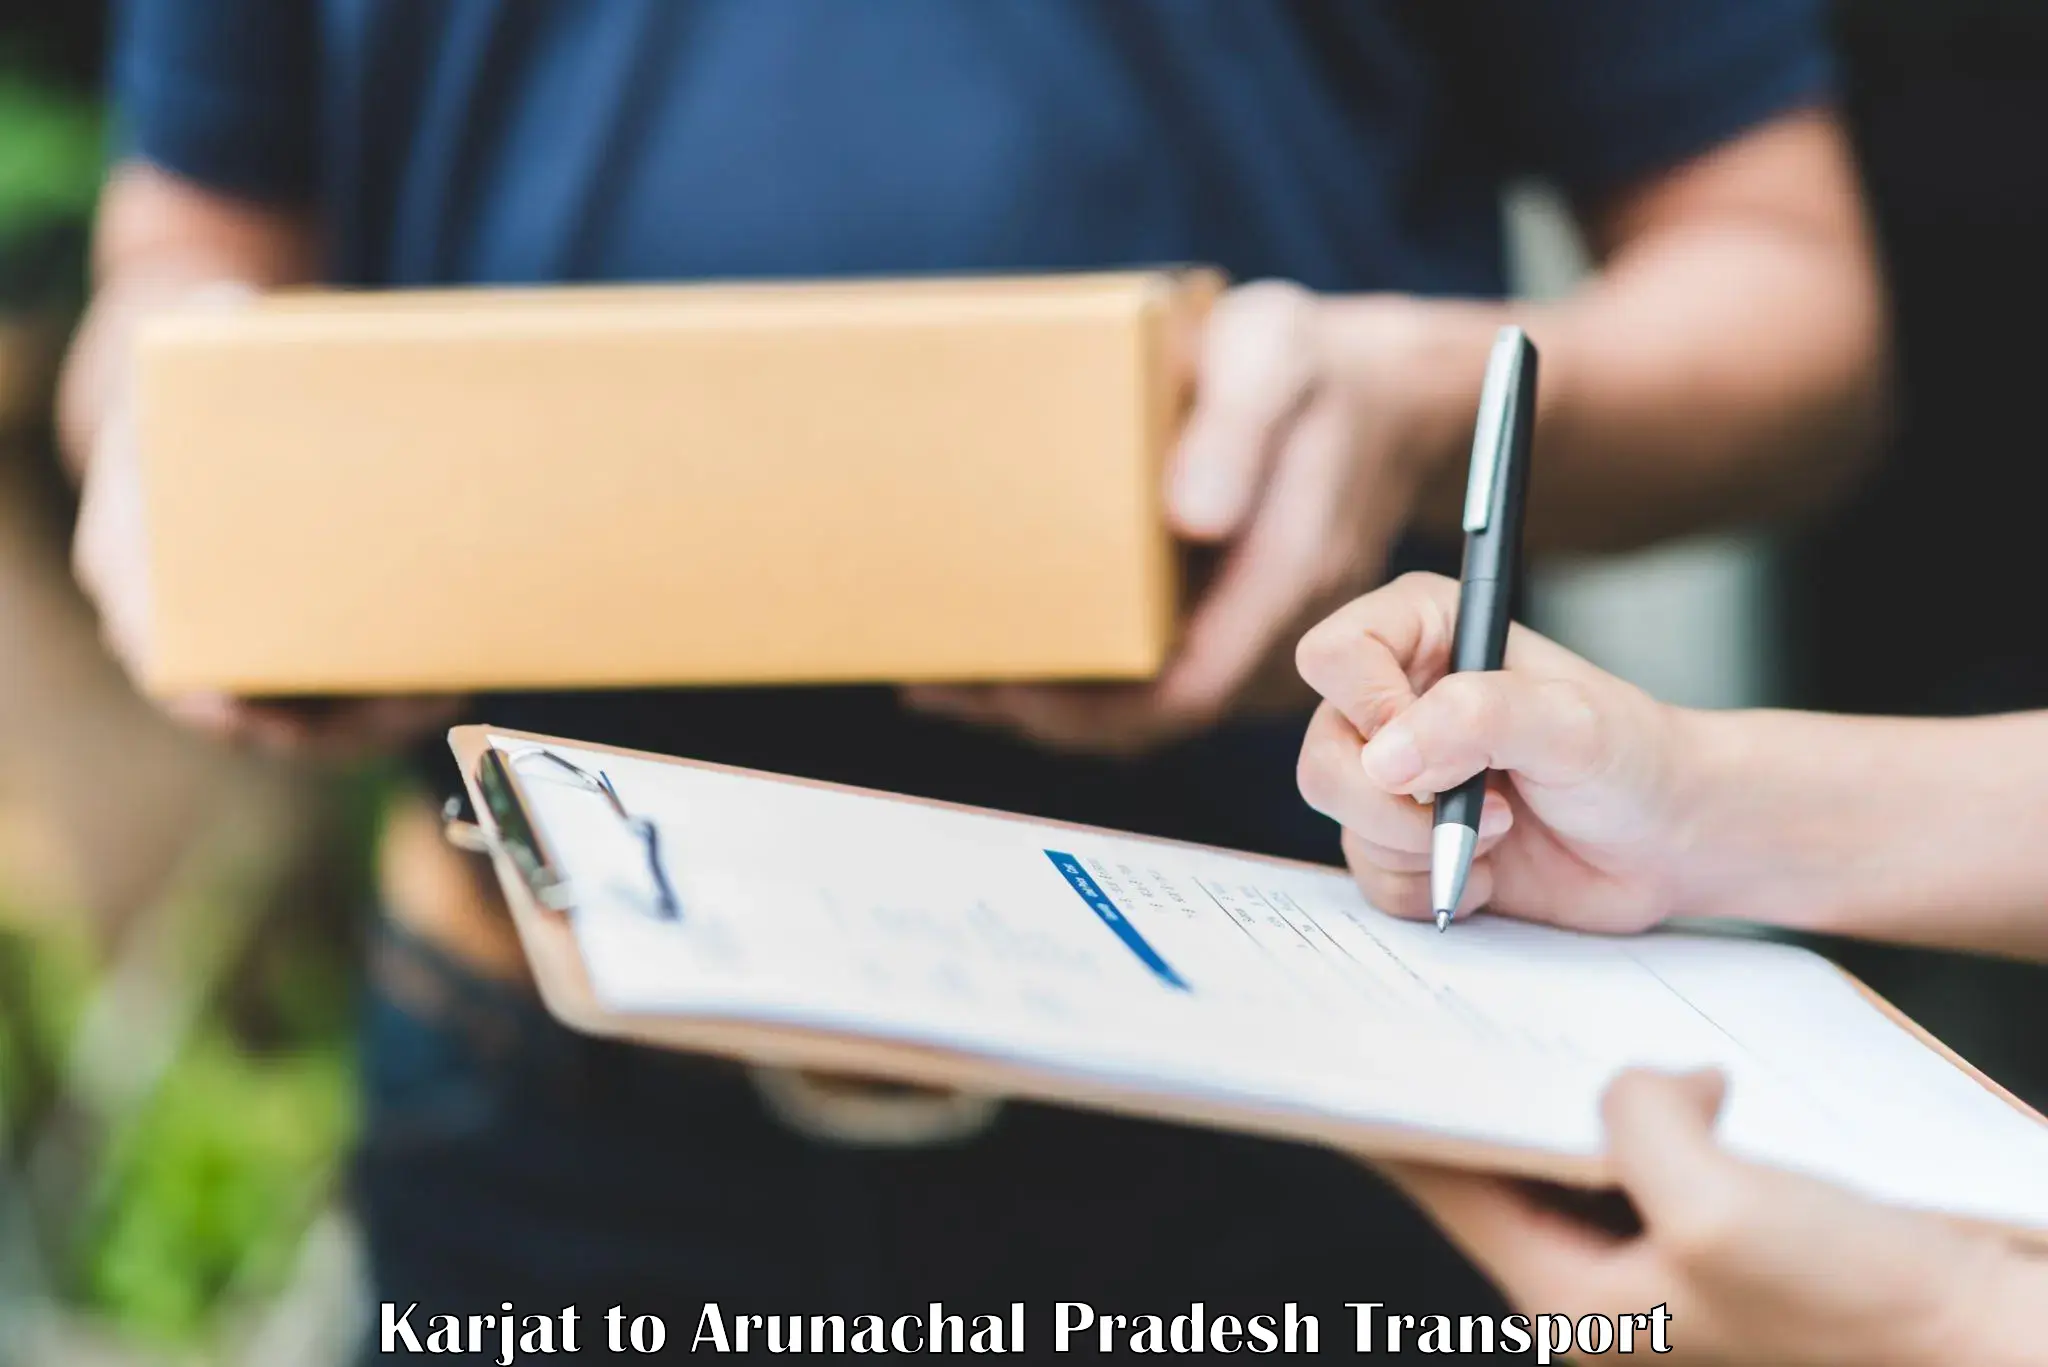 Cargo train transport services Karjat to Arunachal Pradesh